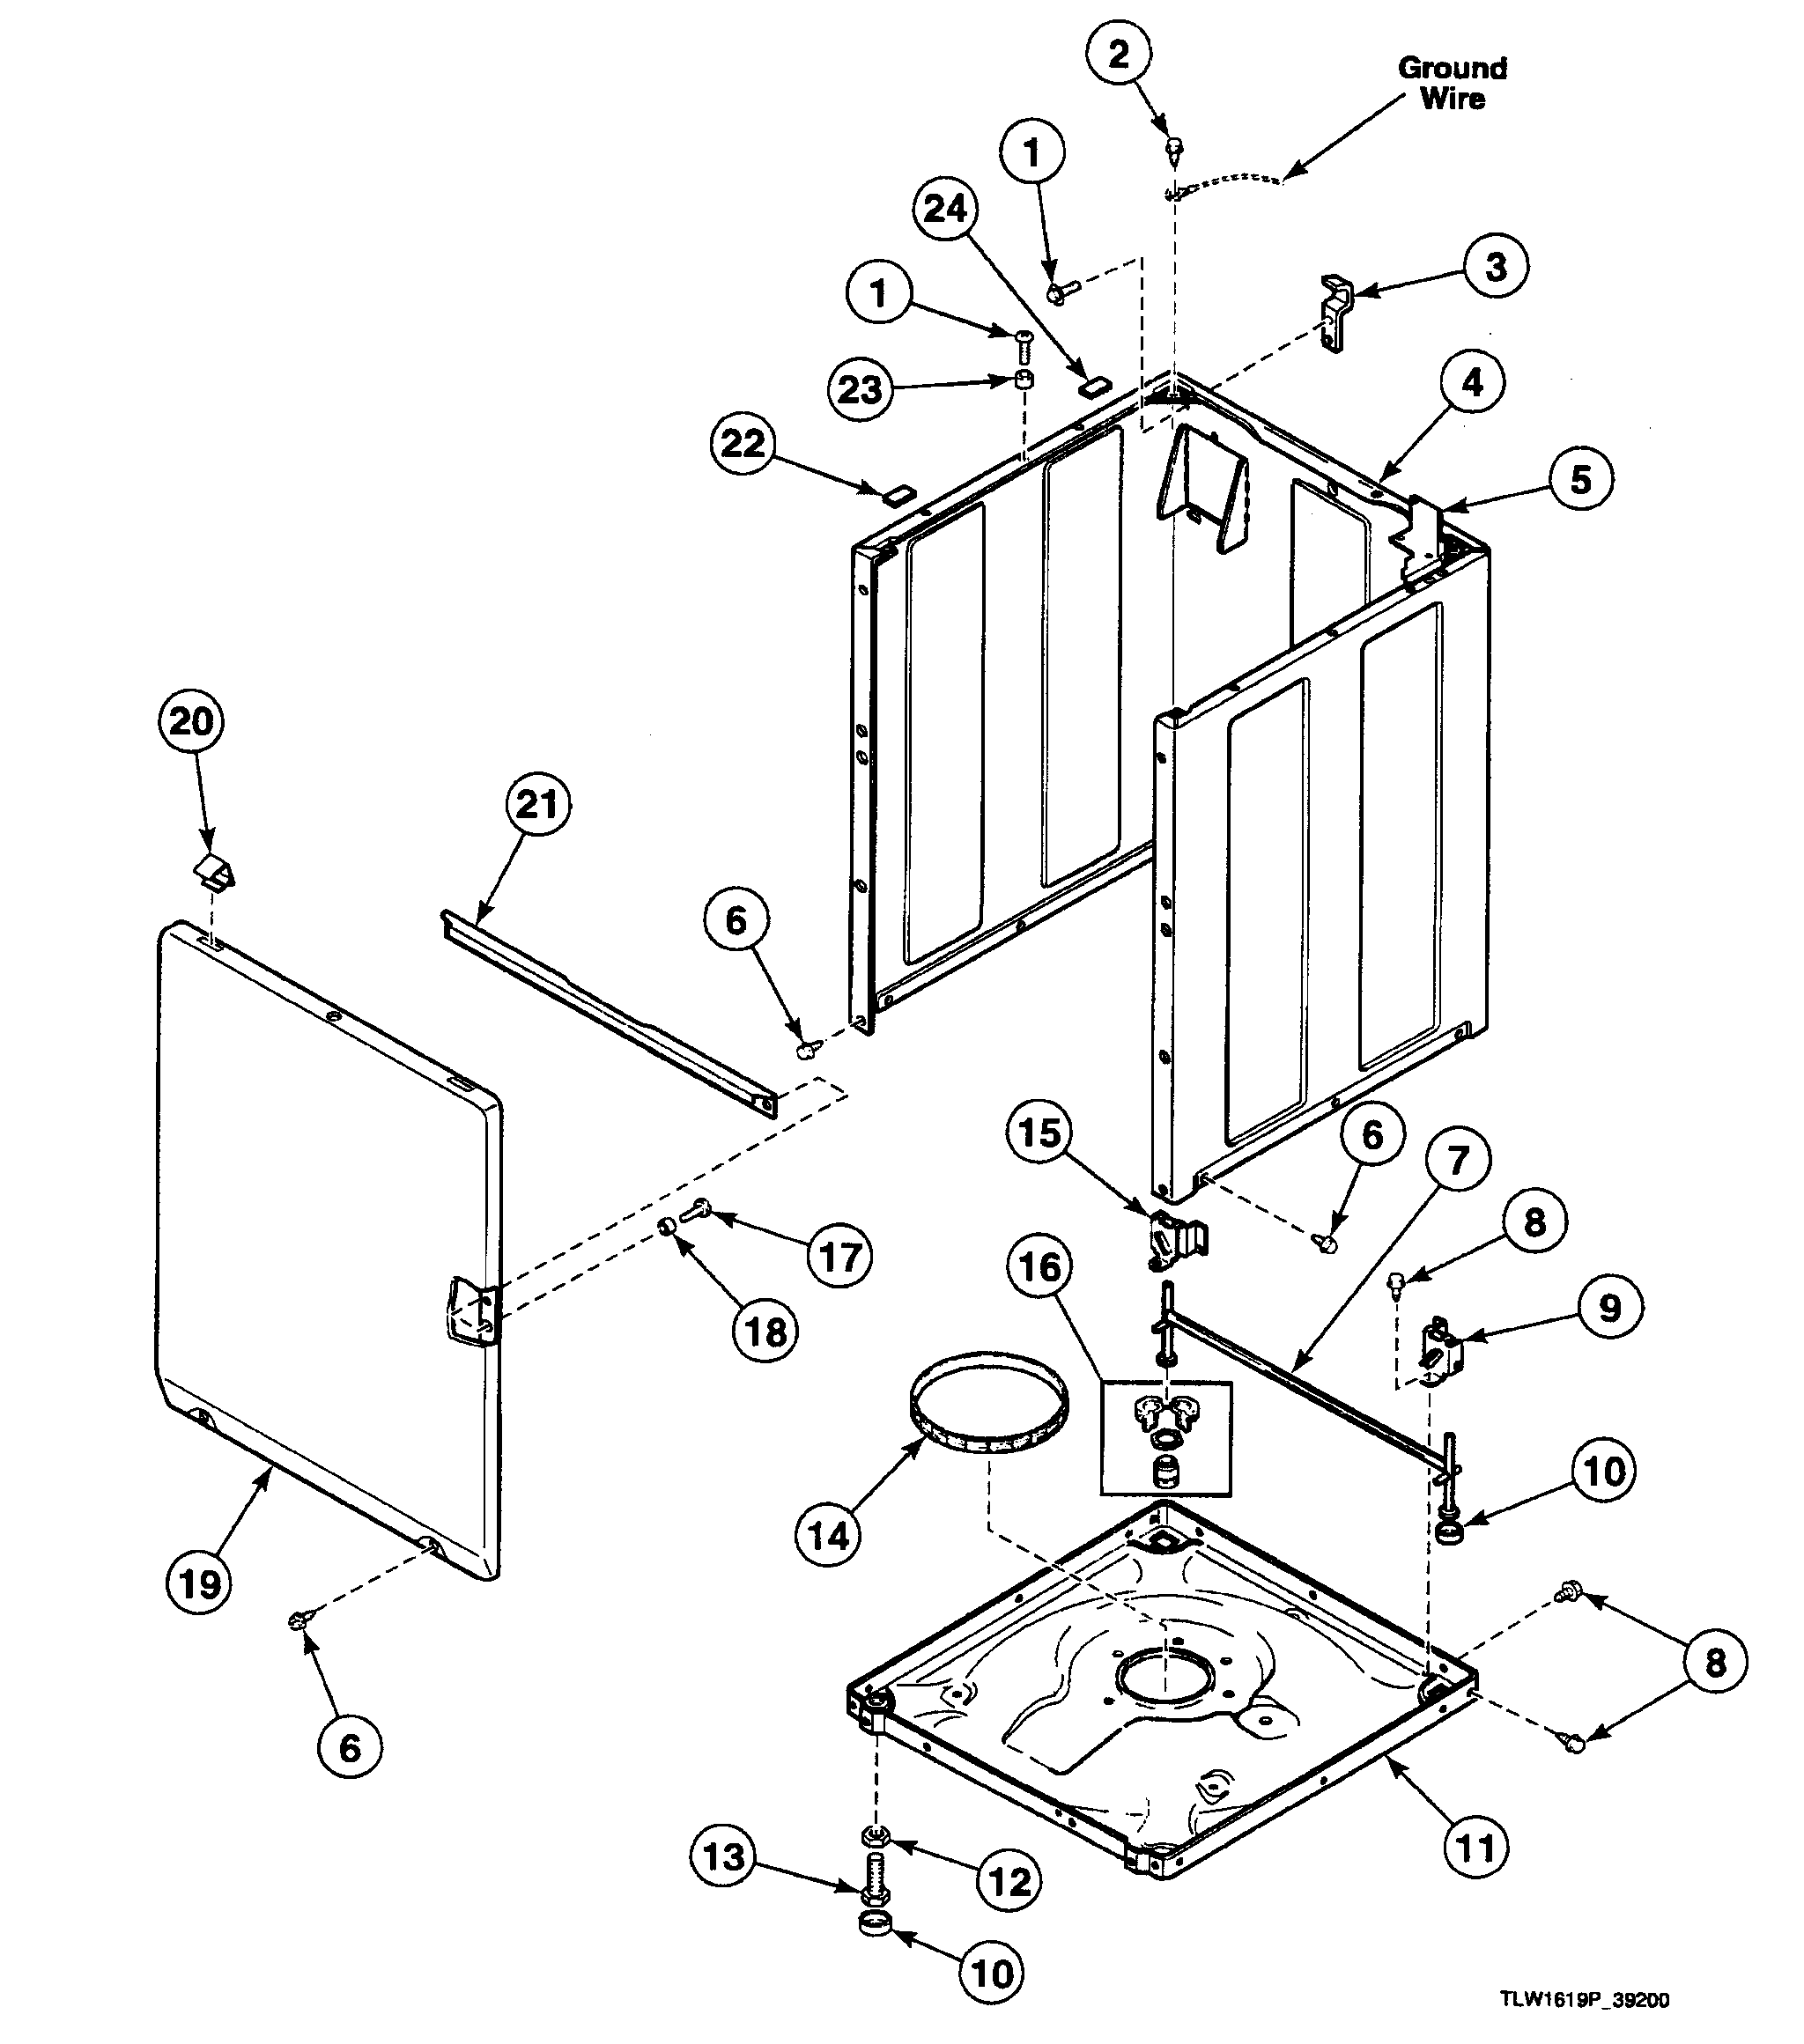 29 Speed Queen Dryer Parts Diagram